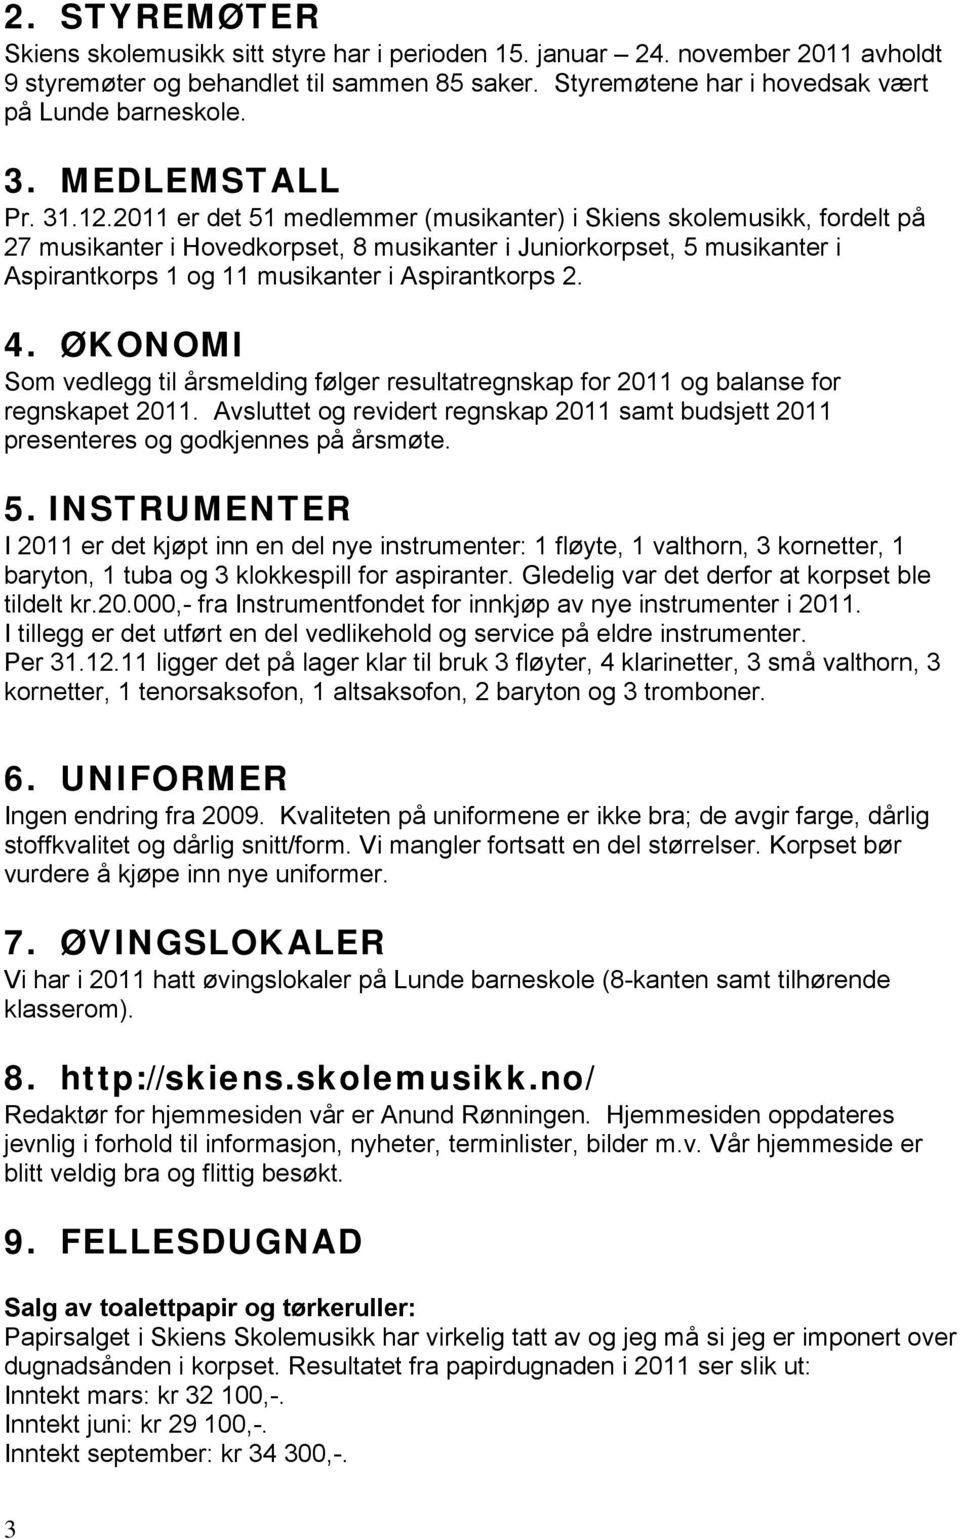 2011 er det 51 medlemmer (musikanter) i Skiens skolemusikk, fordelt på 27 musikanter i Hovedkorpset, 8 musikanter i Juniorkorpset, 5 musikanter i Aspirantkorps 1 og 11 musikanter i Aspirantkorps 2. 4.